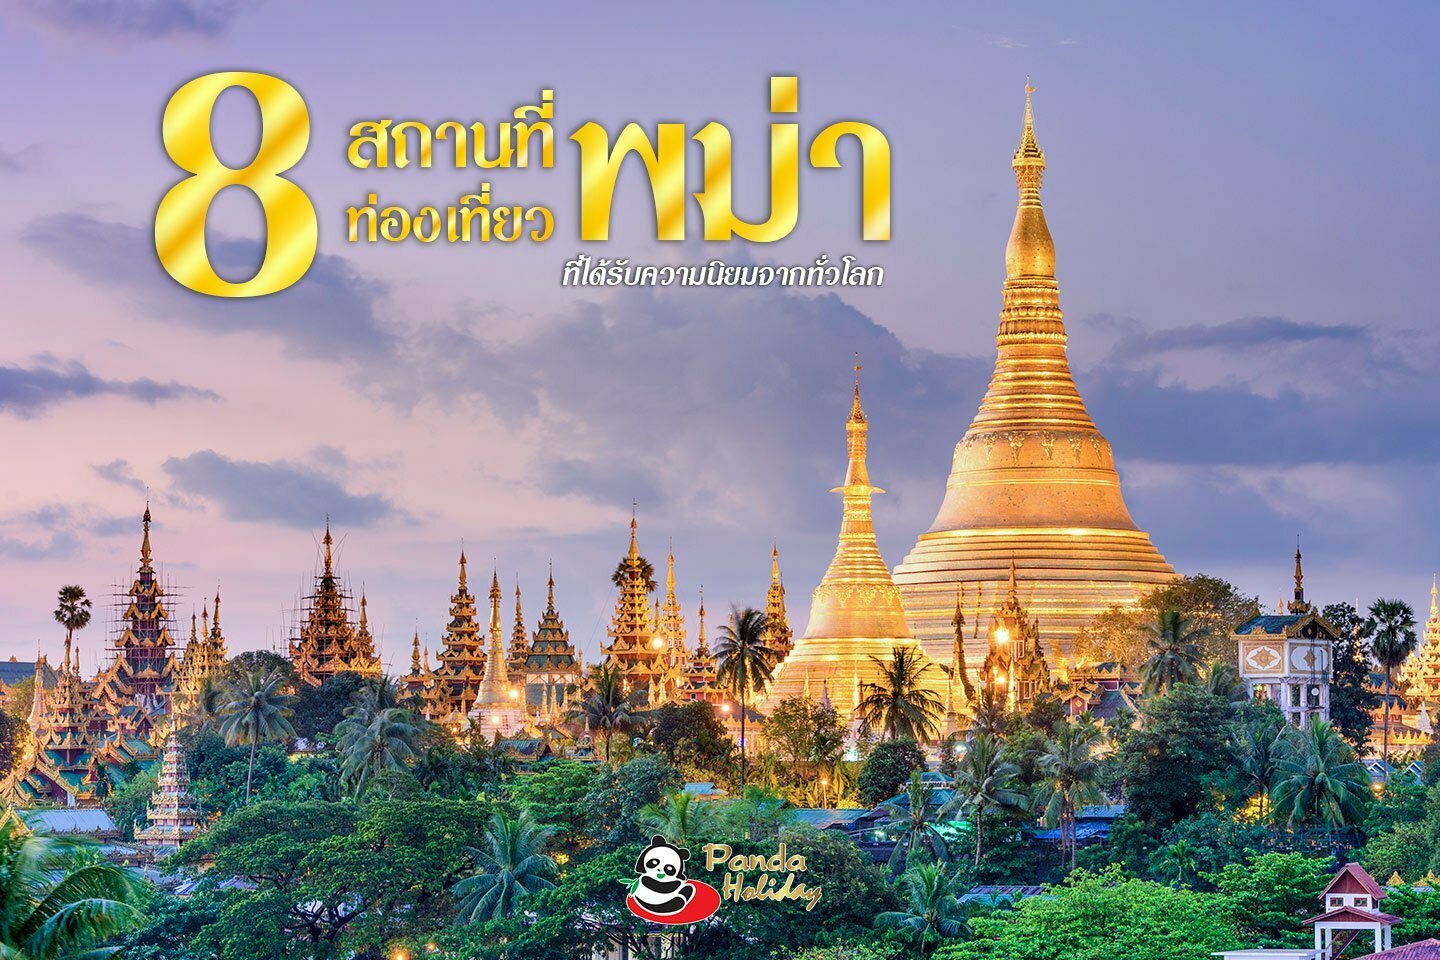 8 สถานที่ท่องเที่ยวพม่า ที่ได้รับความนิยมจากทั่วโลก